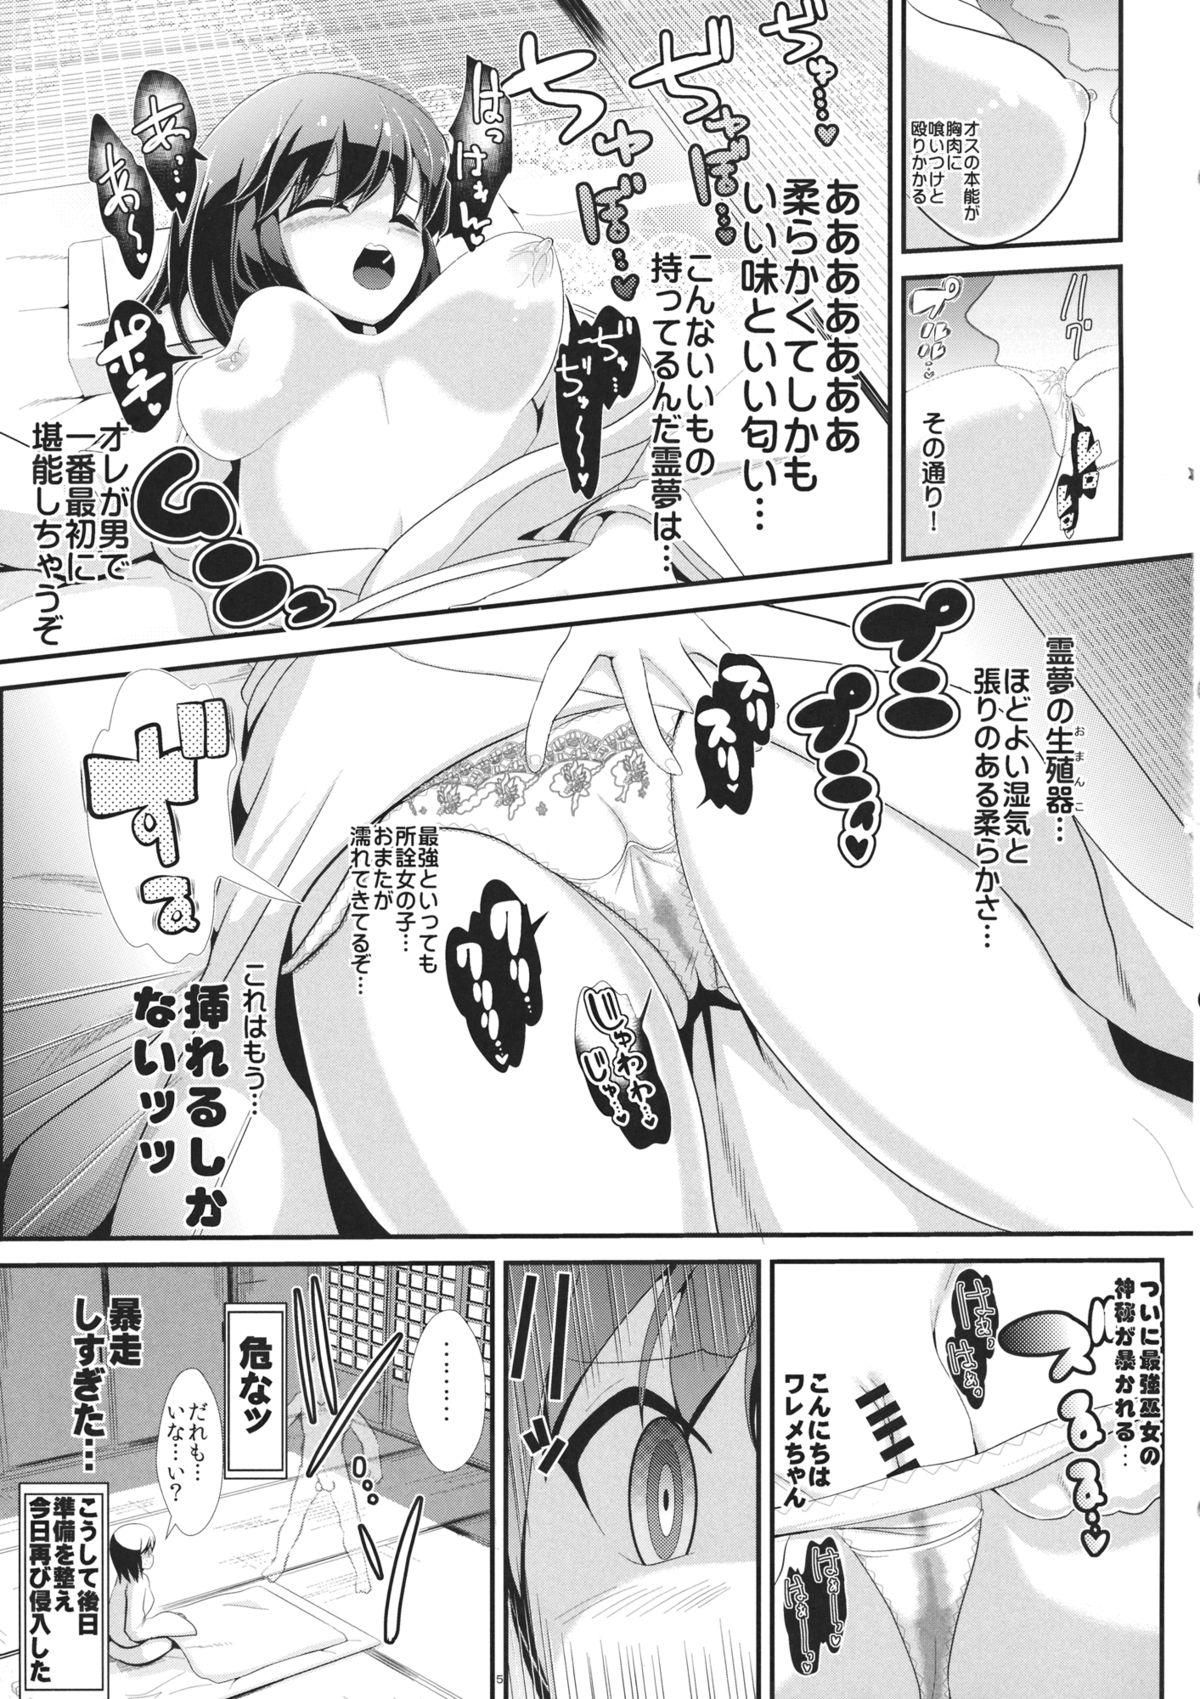 Abuse Touhou Toumei Ningen 4 Shinnyuu Reimu n Chi - Touhou project Fist - Page 6